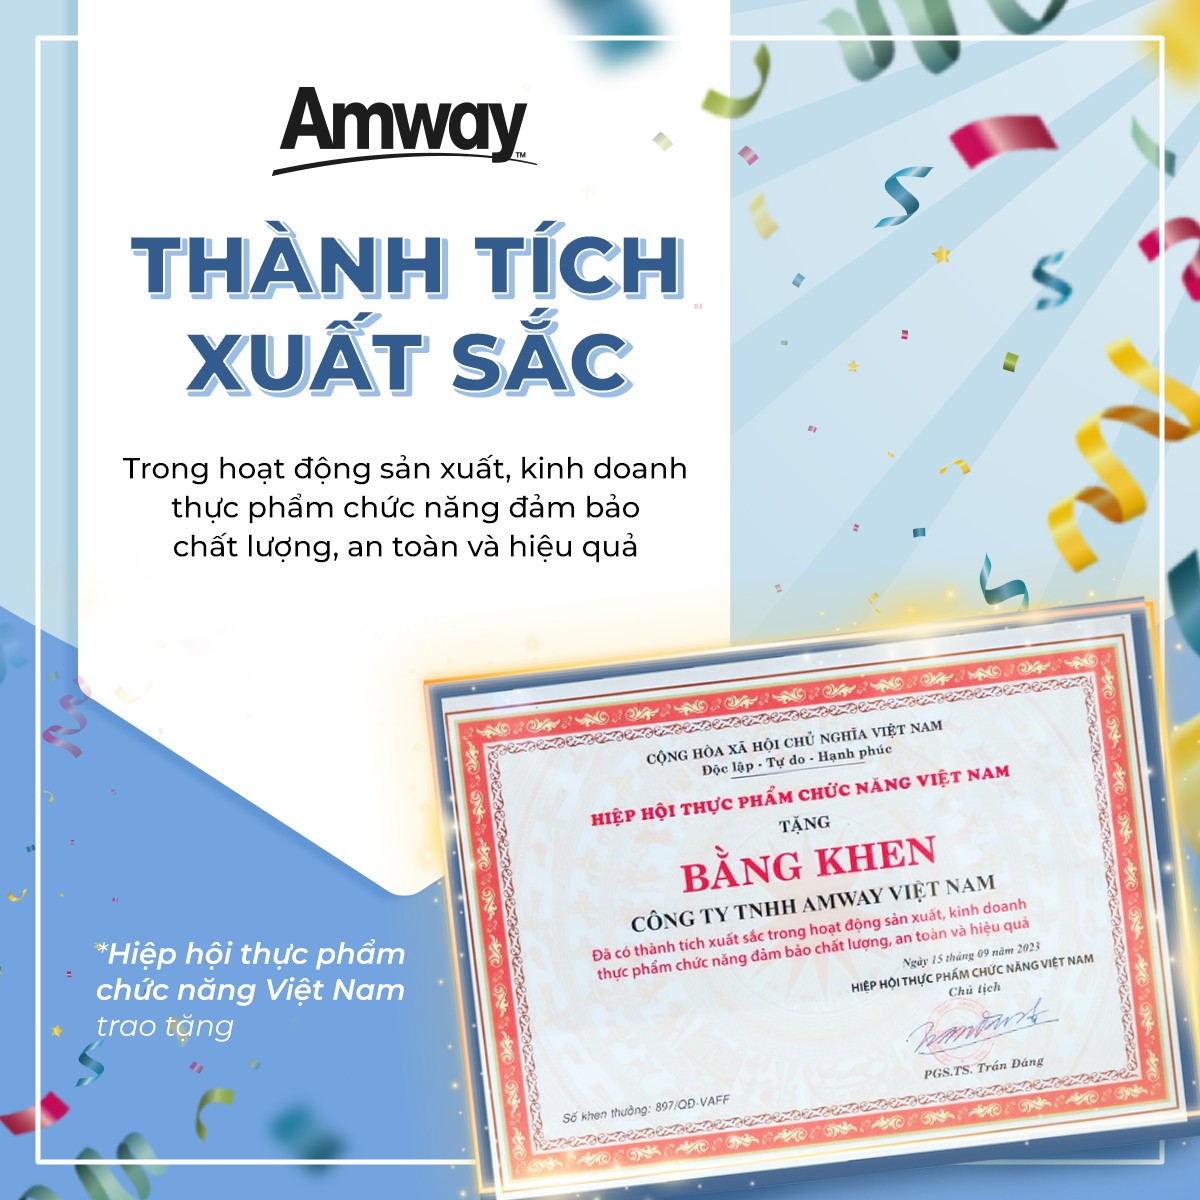 Amway Việt Nam lần thứ 11 vinh dự nhận giải thưởng “Sản phẩm vàng vì sức khỏe cộng đồng” - 2